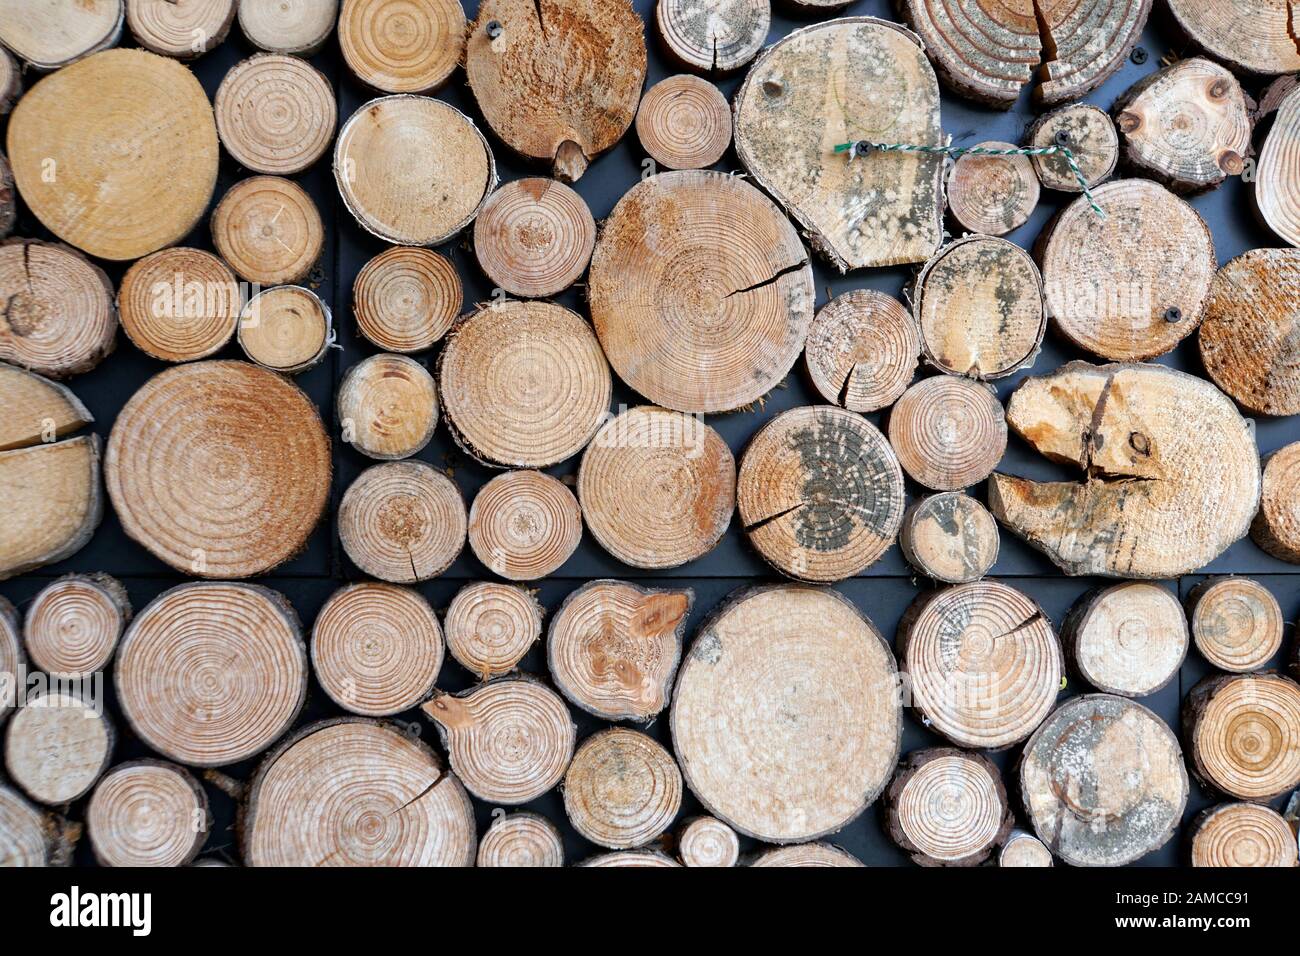 Wandverkleidung mit Holzscheiben unterschiedlicher Größe Stock Photo - Alamy